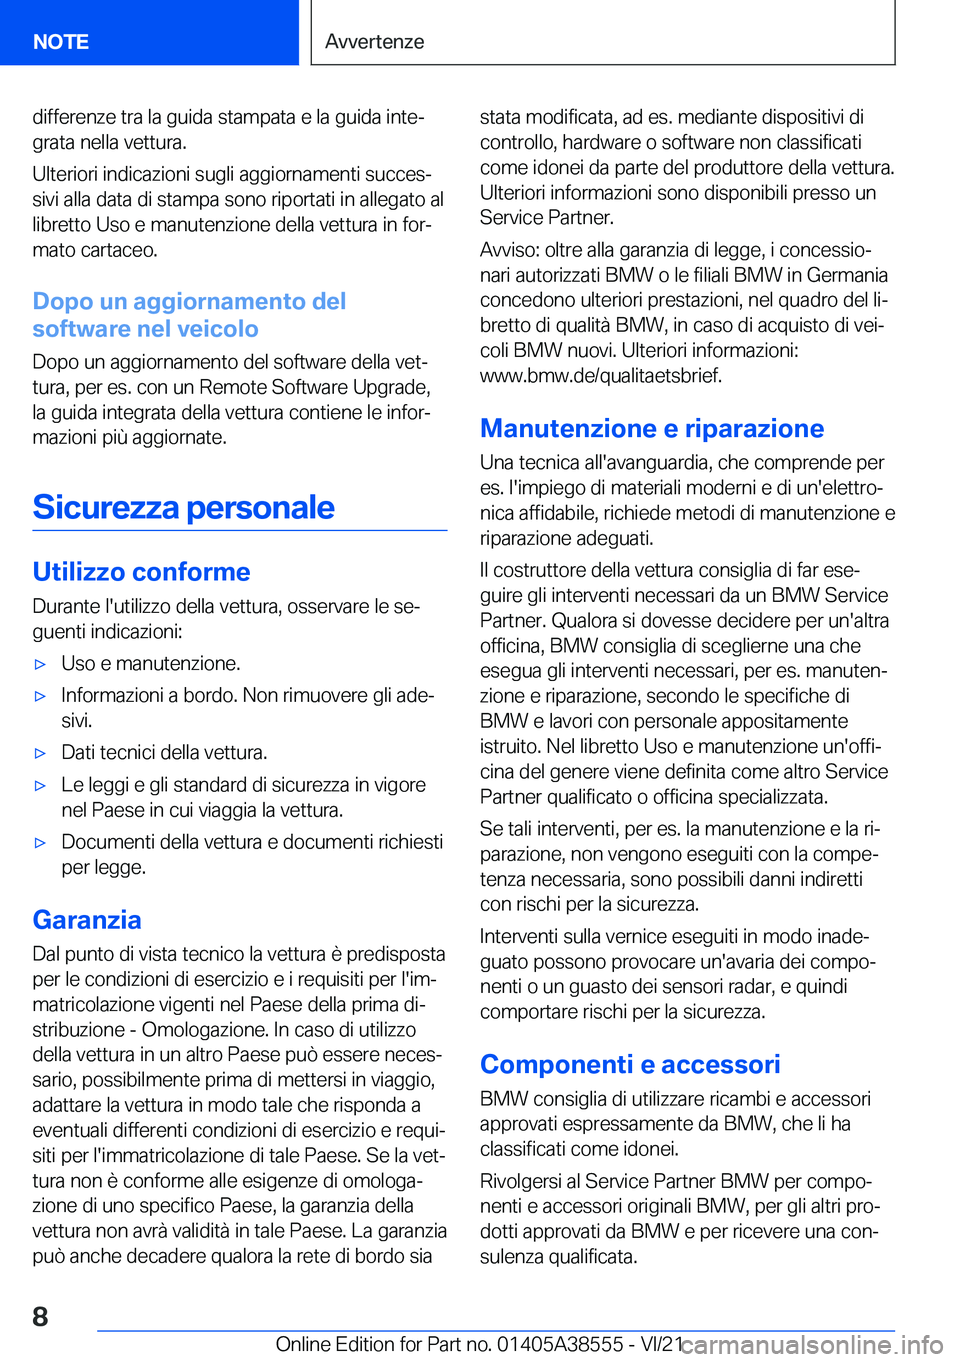 BMW X6 2022  Libretti Di Uso E manutenzione (in Italian) �d�i�f�f�e�r�e�n�z�e��t�r�a��l�a��g�u�i�d�a��s�t�a�m�p�a�t�a��e��l�a��g�u�i�d�a��i�n�t�eª�g�r�a�t�a��n�e�l�l�a��v�e�t�t�u�r�a�.
�U�l�t�e�r�i�o�r�i��i�n�d�i�c�a�z�i�o�n�i��s�u�g�l�i��a�g